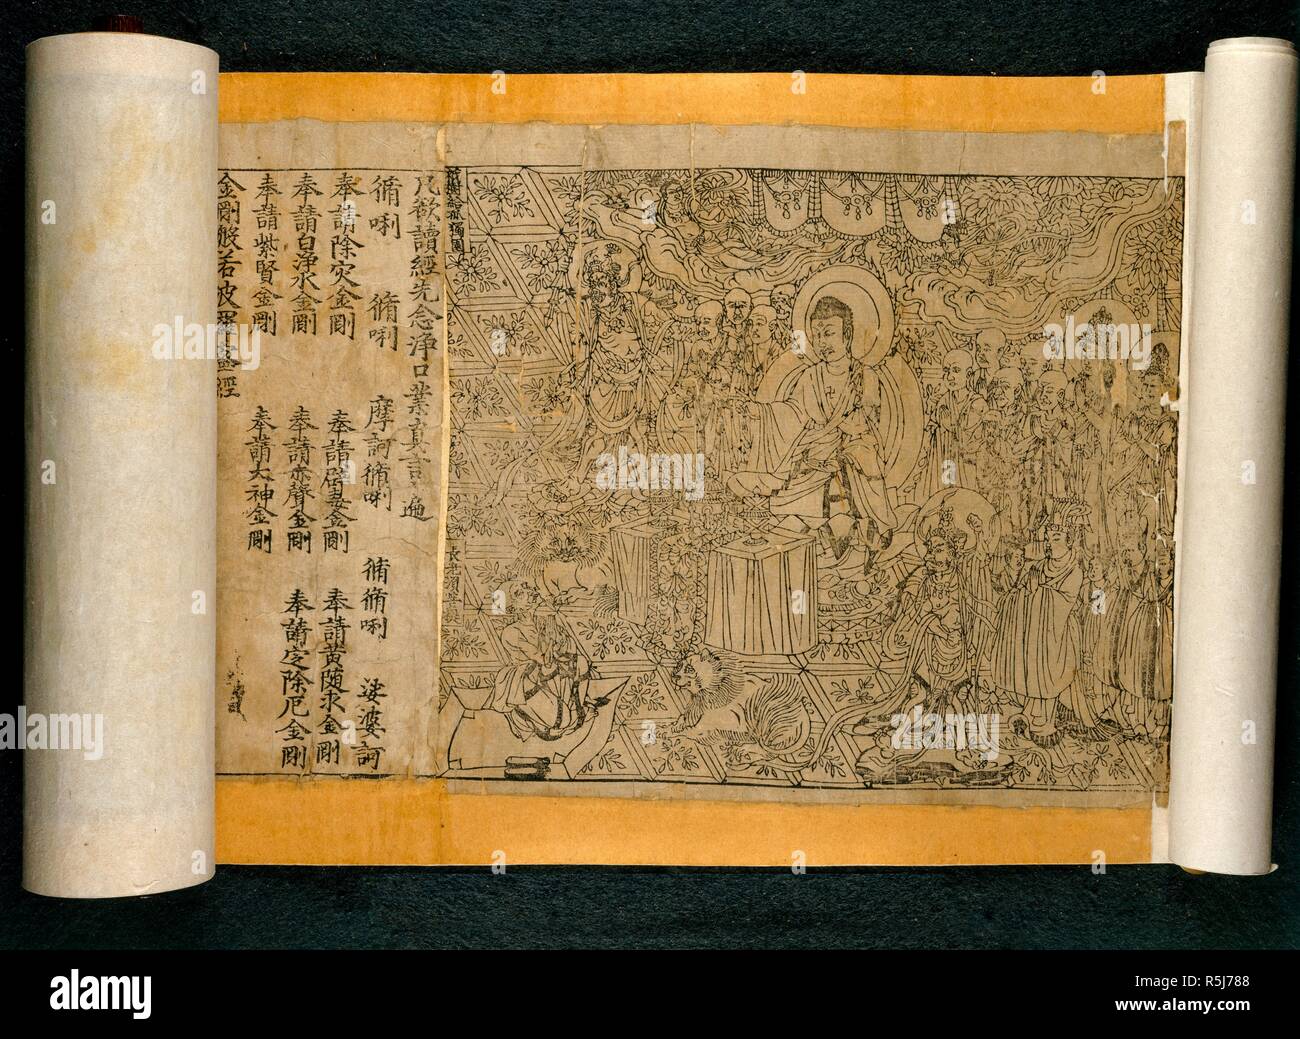 L'image illustre le frontispice de la première impression de bloc complet â€™bookâ€™ trouvés jusqu'à maintenant qui contient une date, la traduction chinoise du texte bouddhique le Sutra du 'Diamond'. Il s'agit d'une banderole, plus de 16 pieds de long, composé d'une longue série de pages imprimées. Imprimé en Chine en 868 AD, il a été trouvé dans les grottes de Dunhuang en 1907, dans le nord des provinces de l'ouest du Gansu. . Sutra du Diamant de 868 AD. La Chine, le 11 mai, 868. Voir aussi : 010627 image (sans faire défiler se termine.). Source : Ou. 8210/P.2, frontispice et texte, faites défiler jusqu'à l'extrémité. Langue : chinois. Banque D'Images